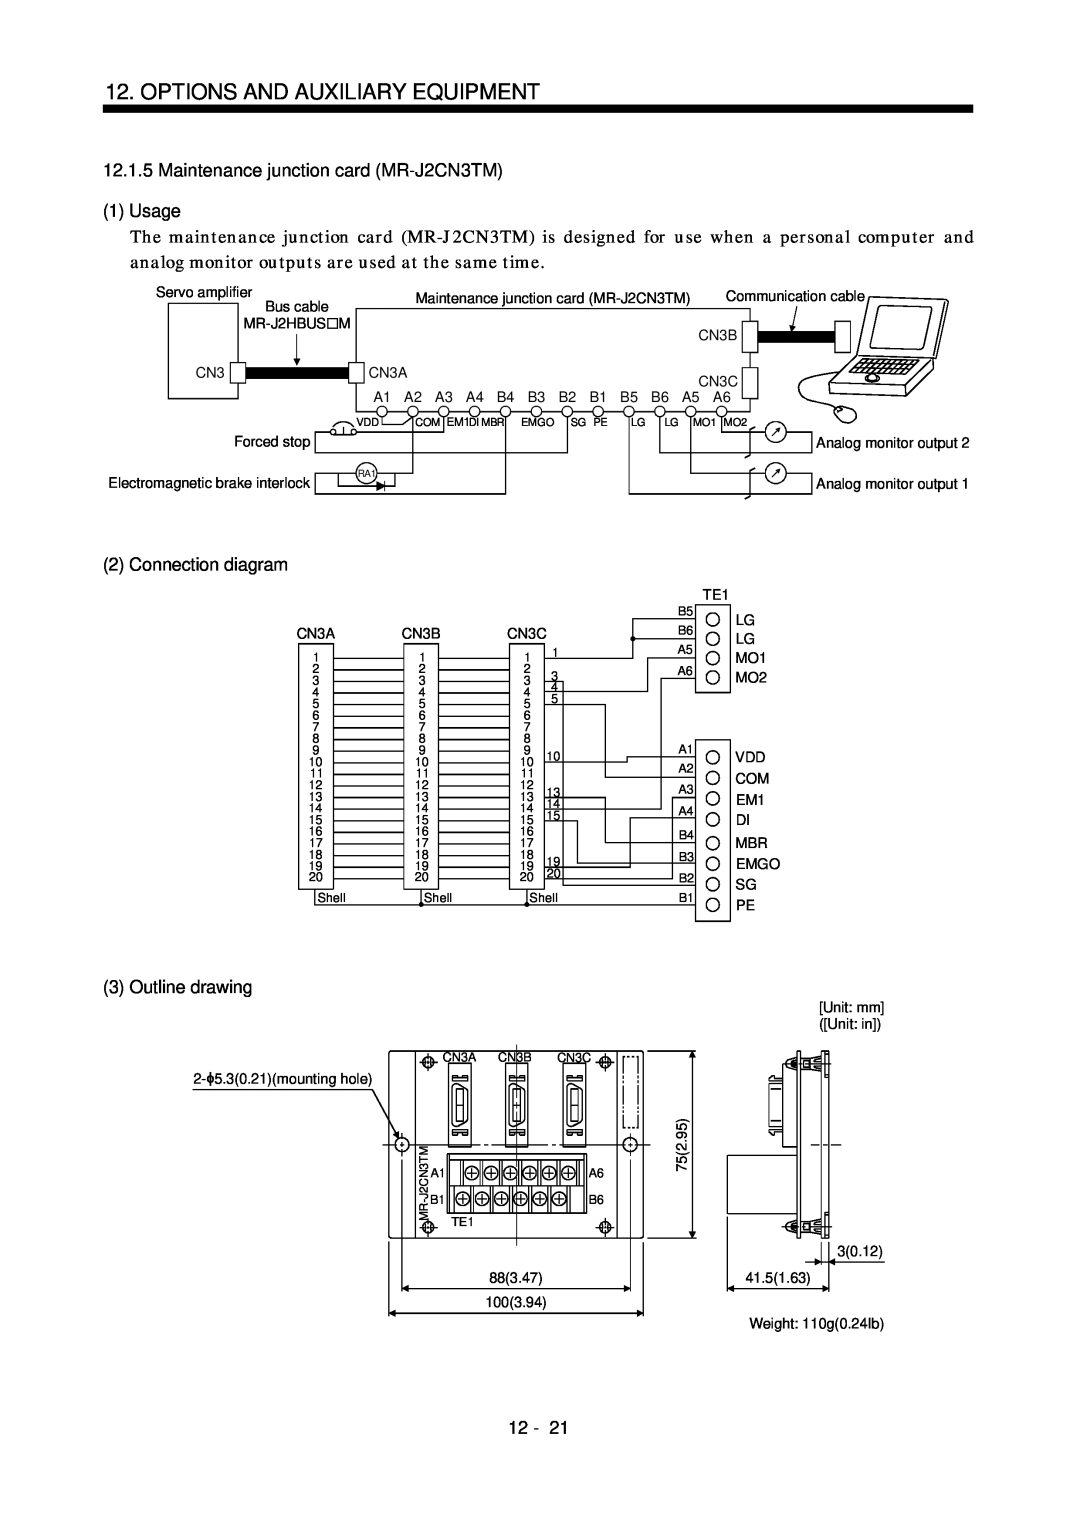 Bose MR-J2S- B instruction manual Maintenance junction card MR-J2CN3TM, 1Usage, Connection diagram, Outline drawing, 12 